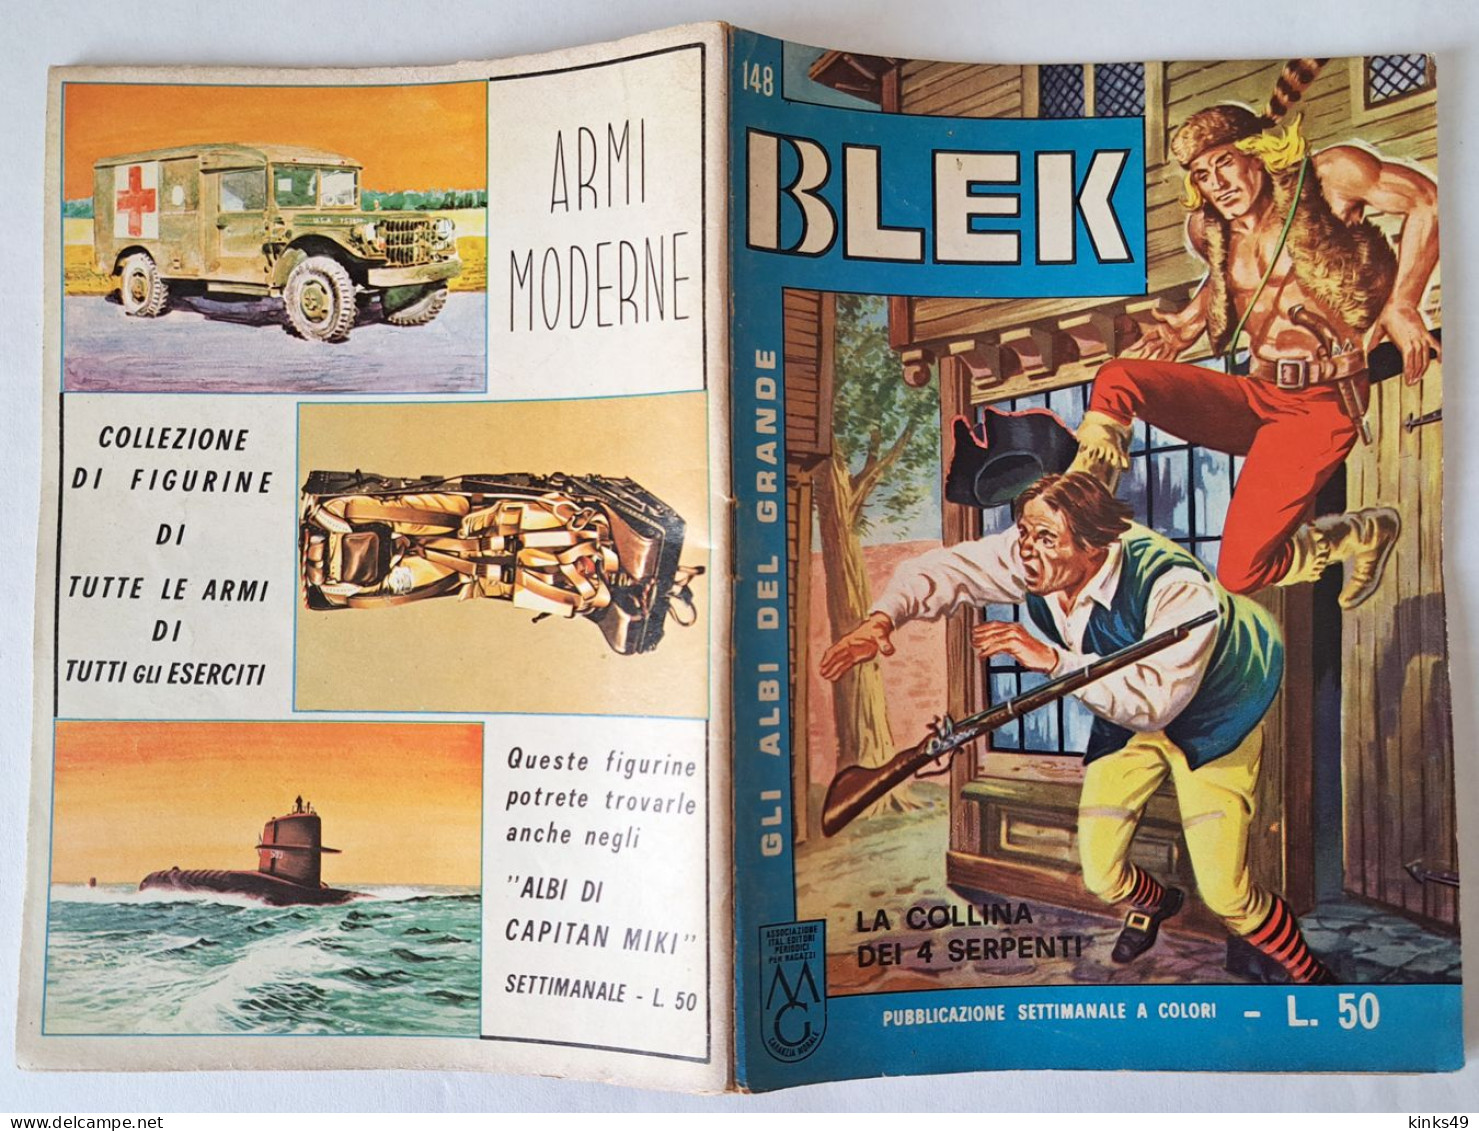 M449> GLI ALBI DEL GRANDE BLEK = N° 148 Del 24 APRILE 1966 < La Collina Dei 4 Serpenti > - First Editions